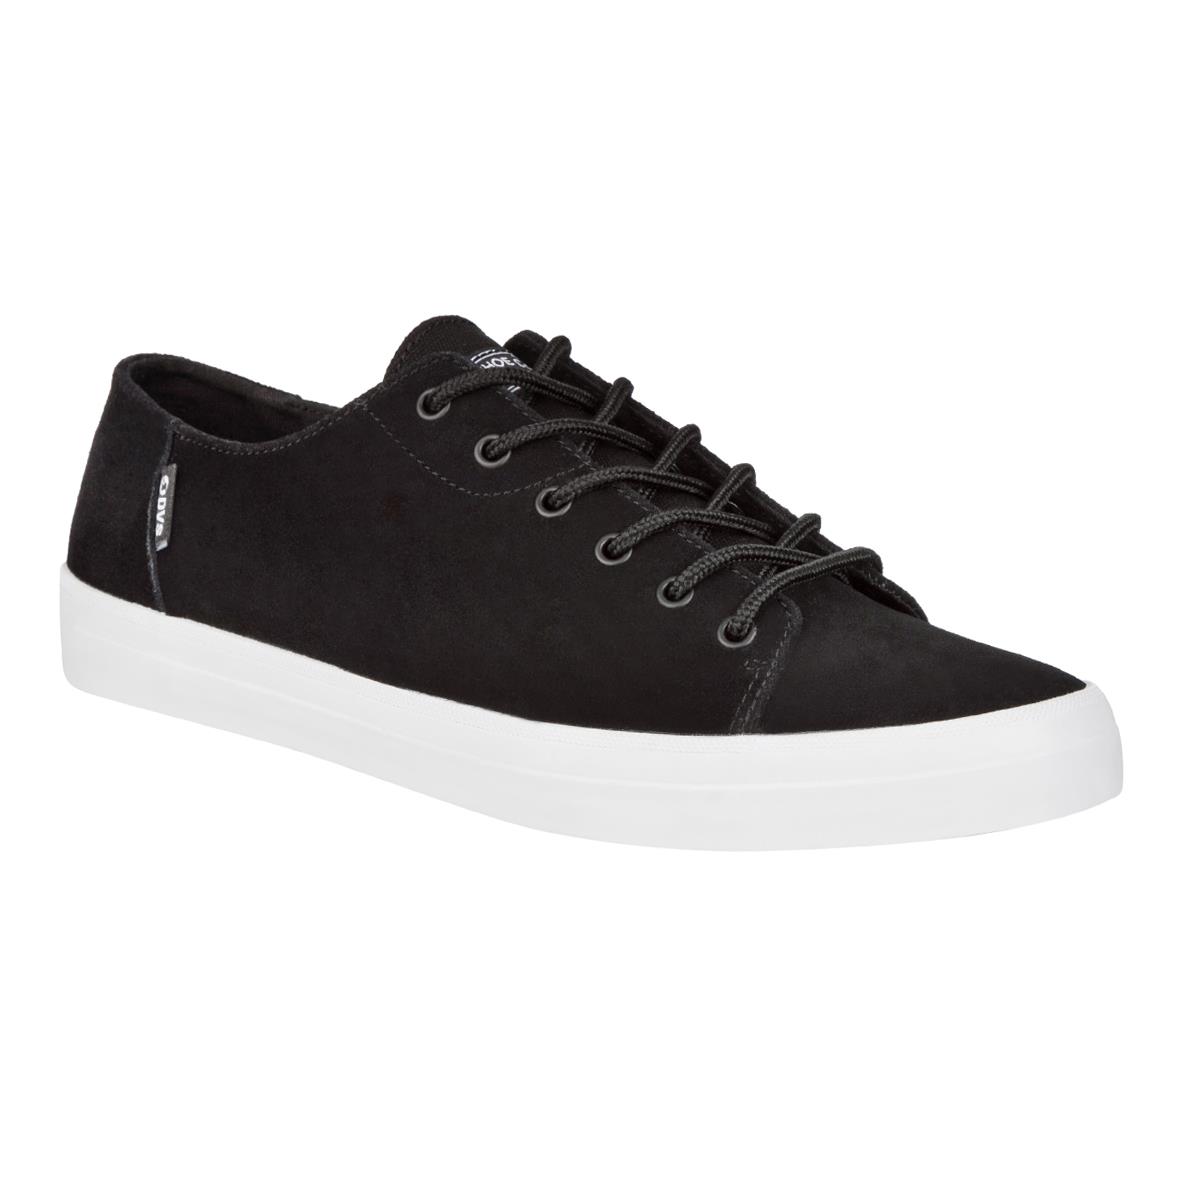 DVS Shoes Edmon Black/Black Suede